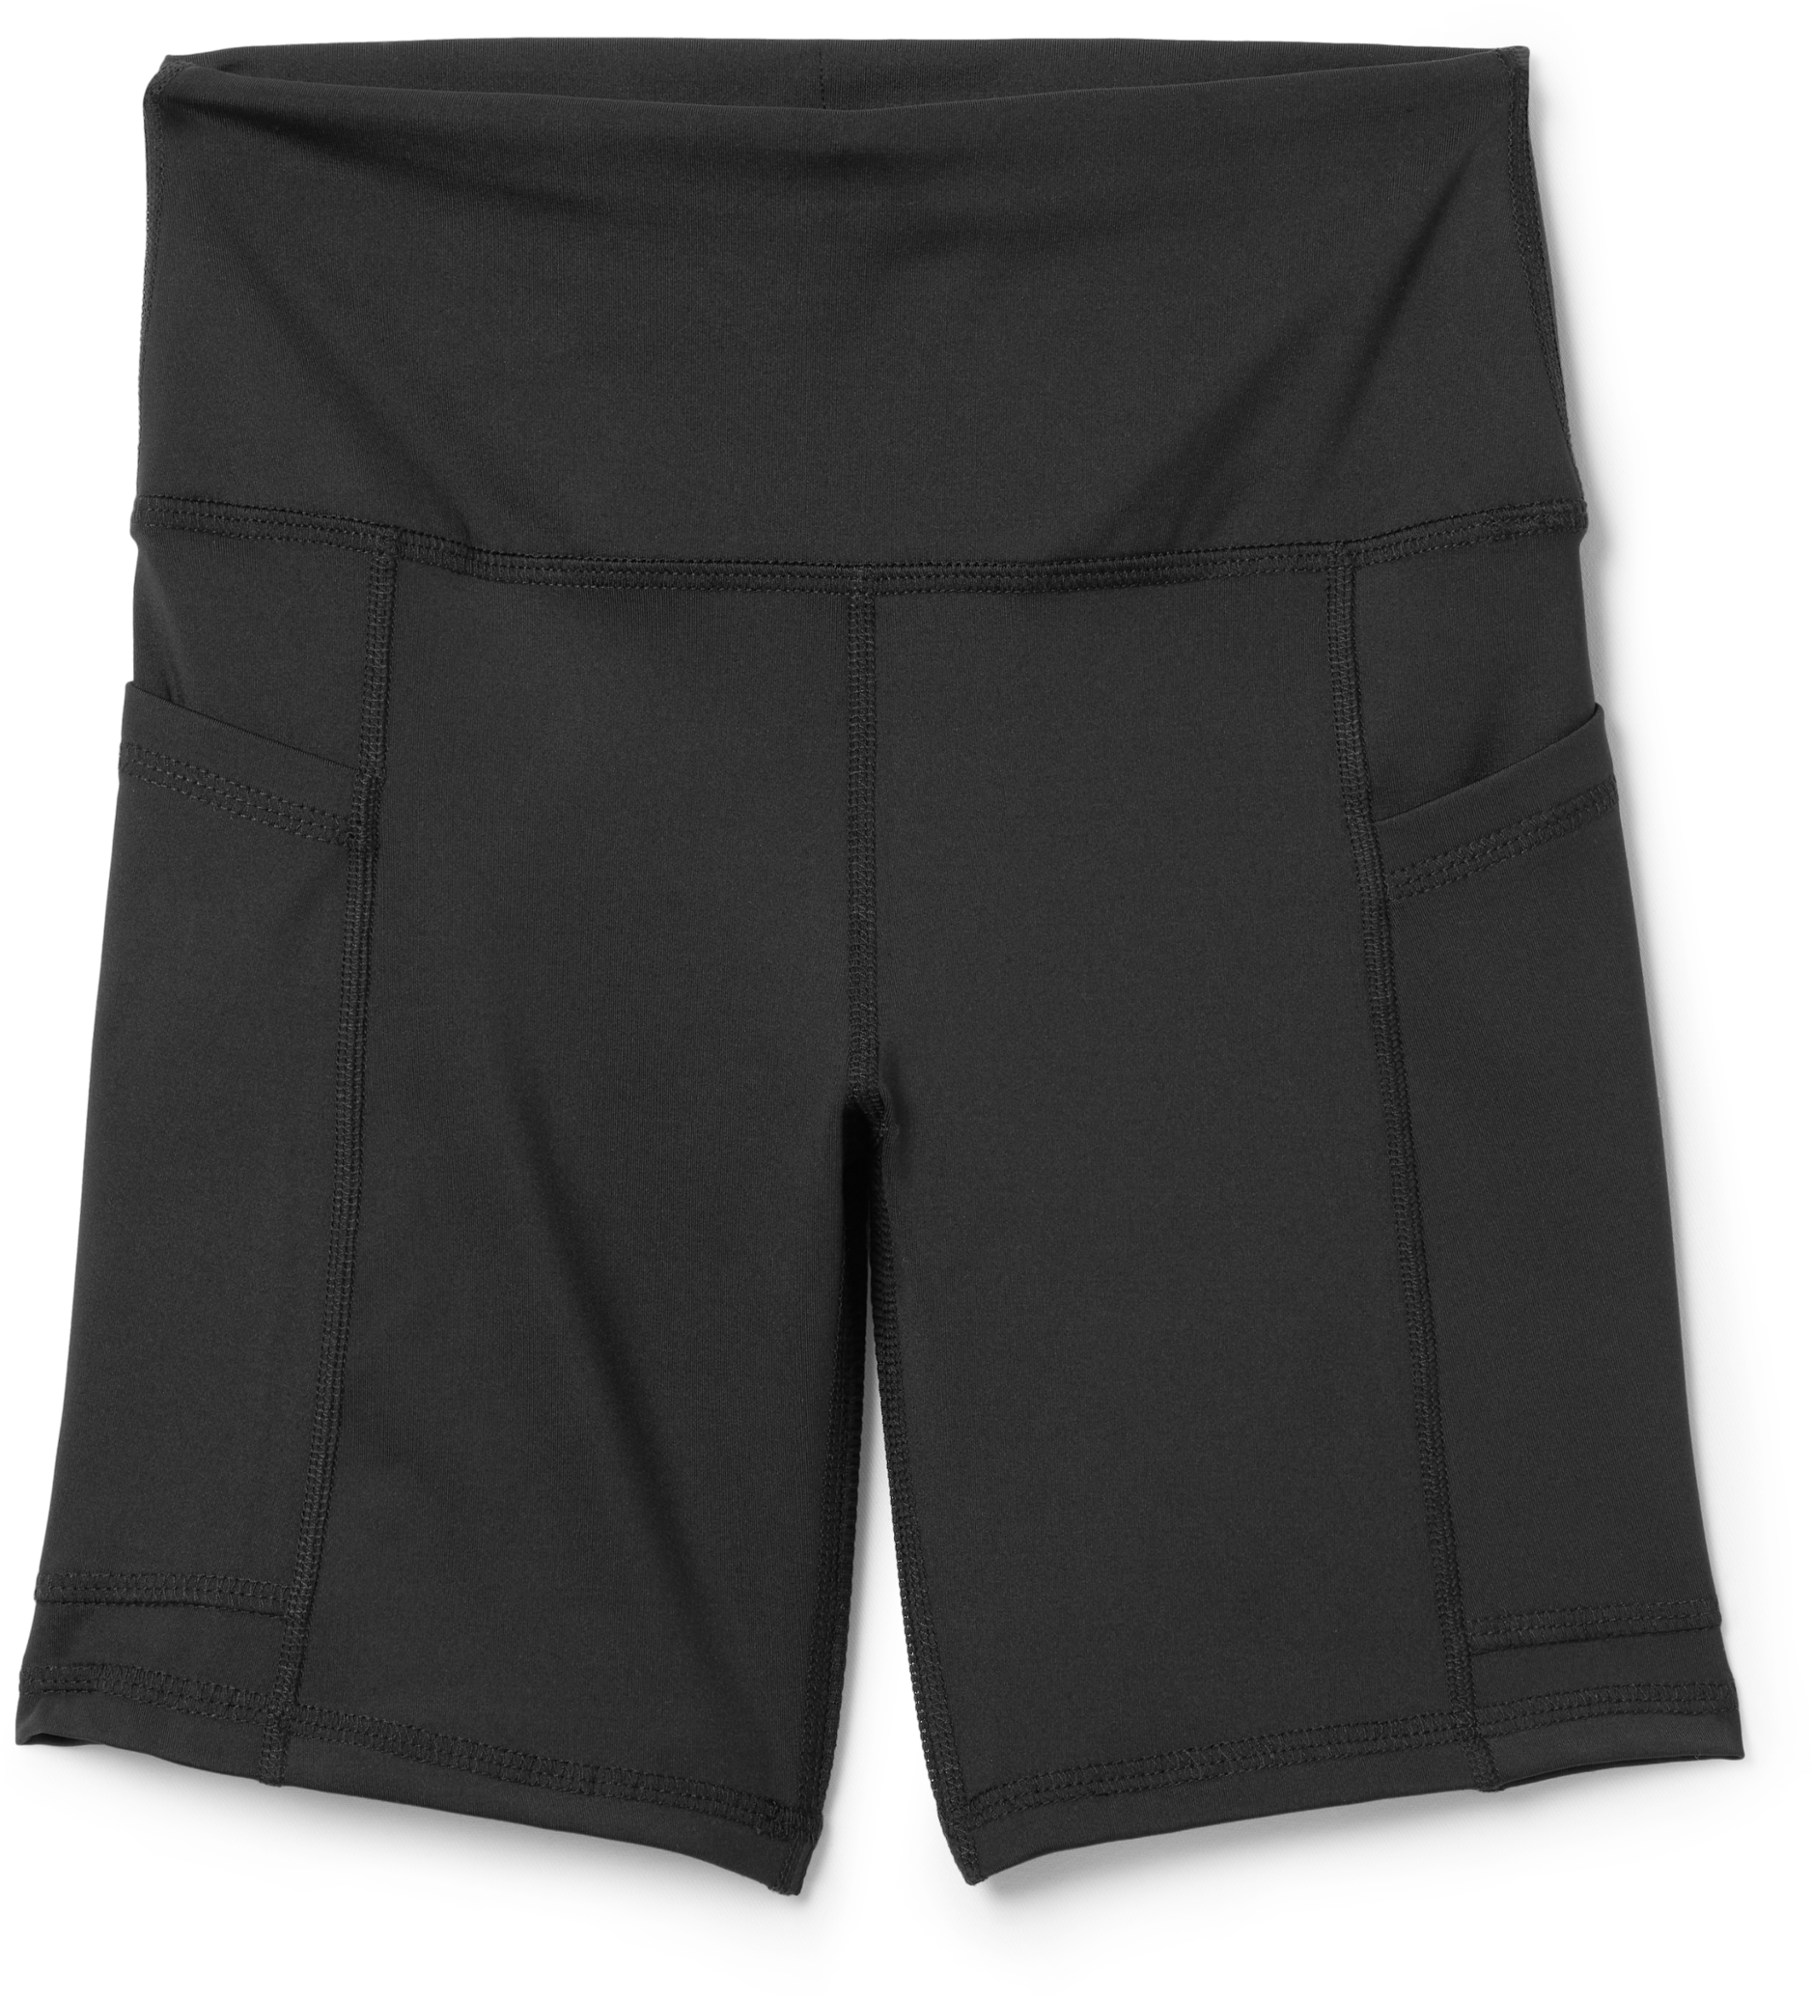 Моделирующие шорты Happy Vaaginа 6 дюймов — женские Oya Femtech Apparel, черный